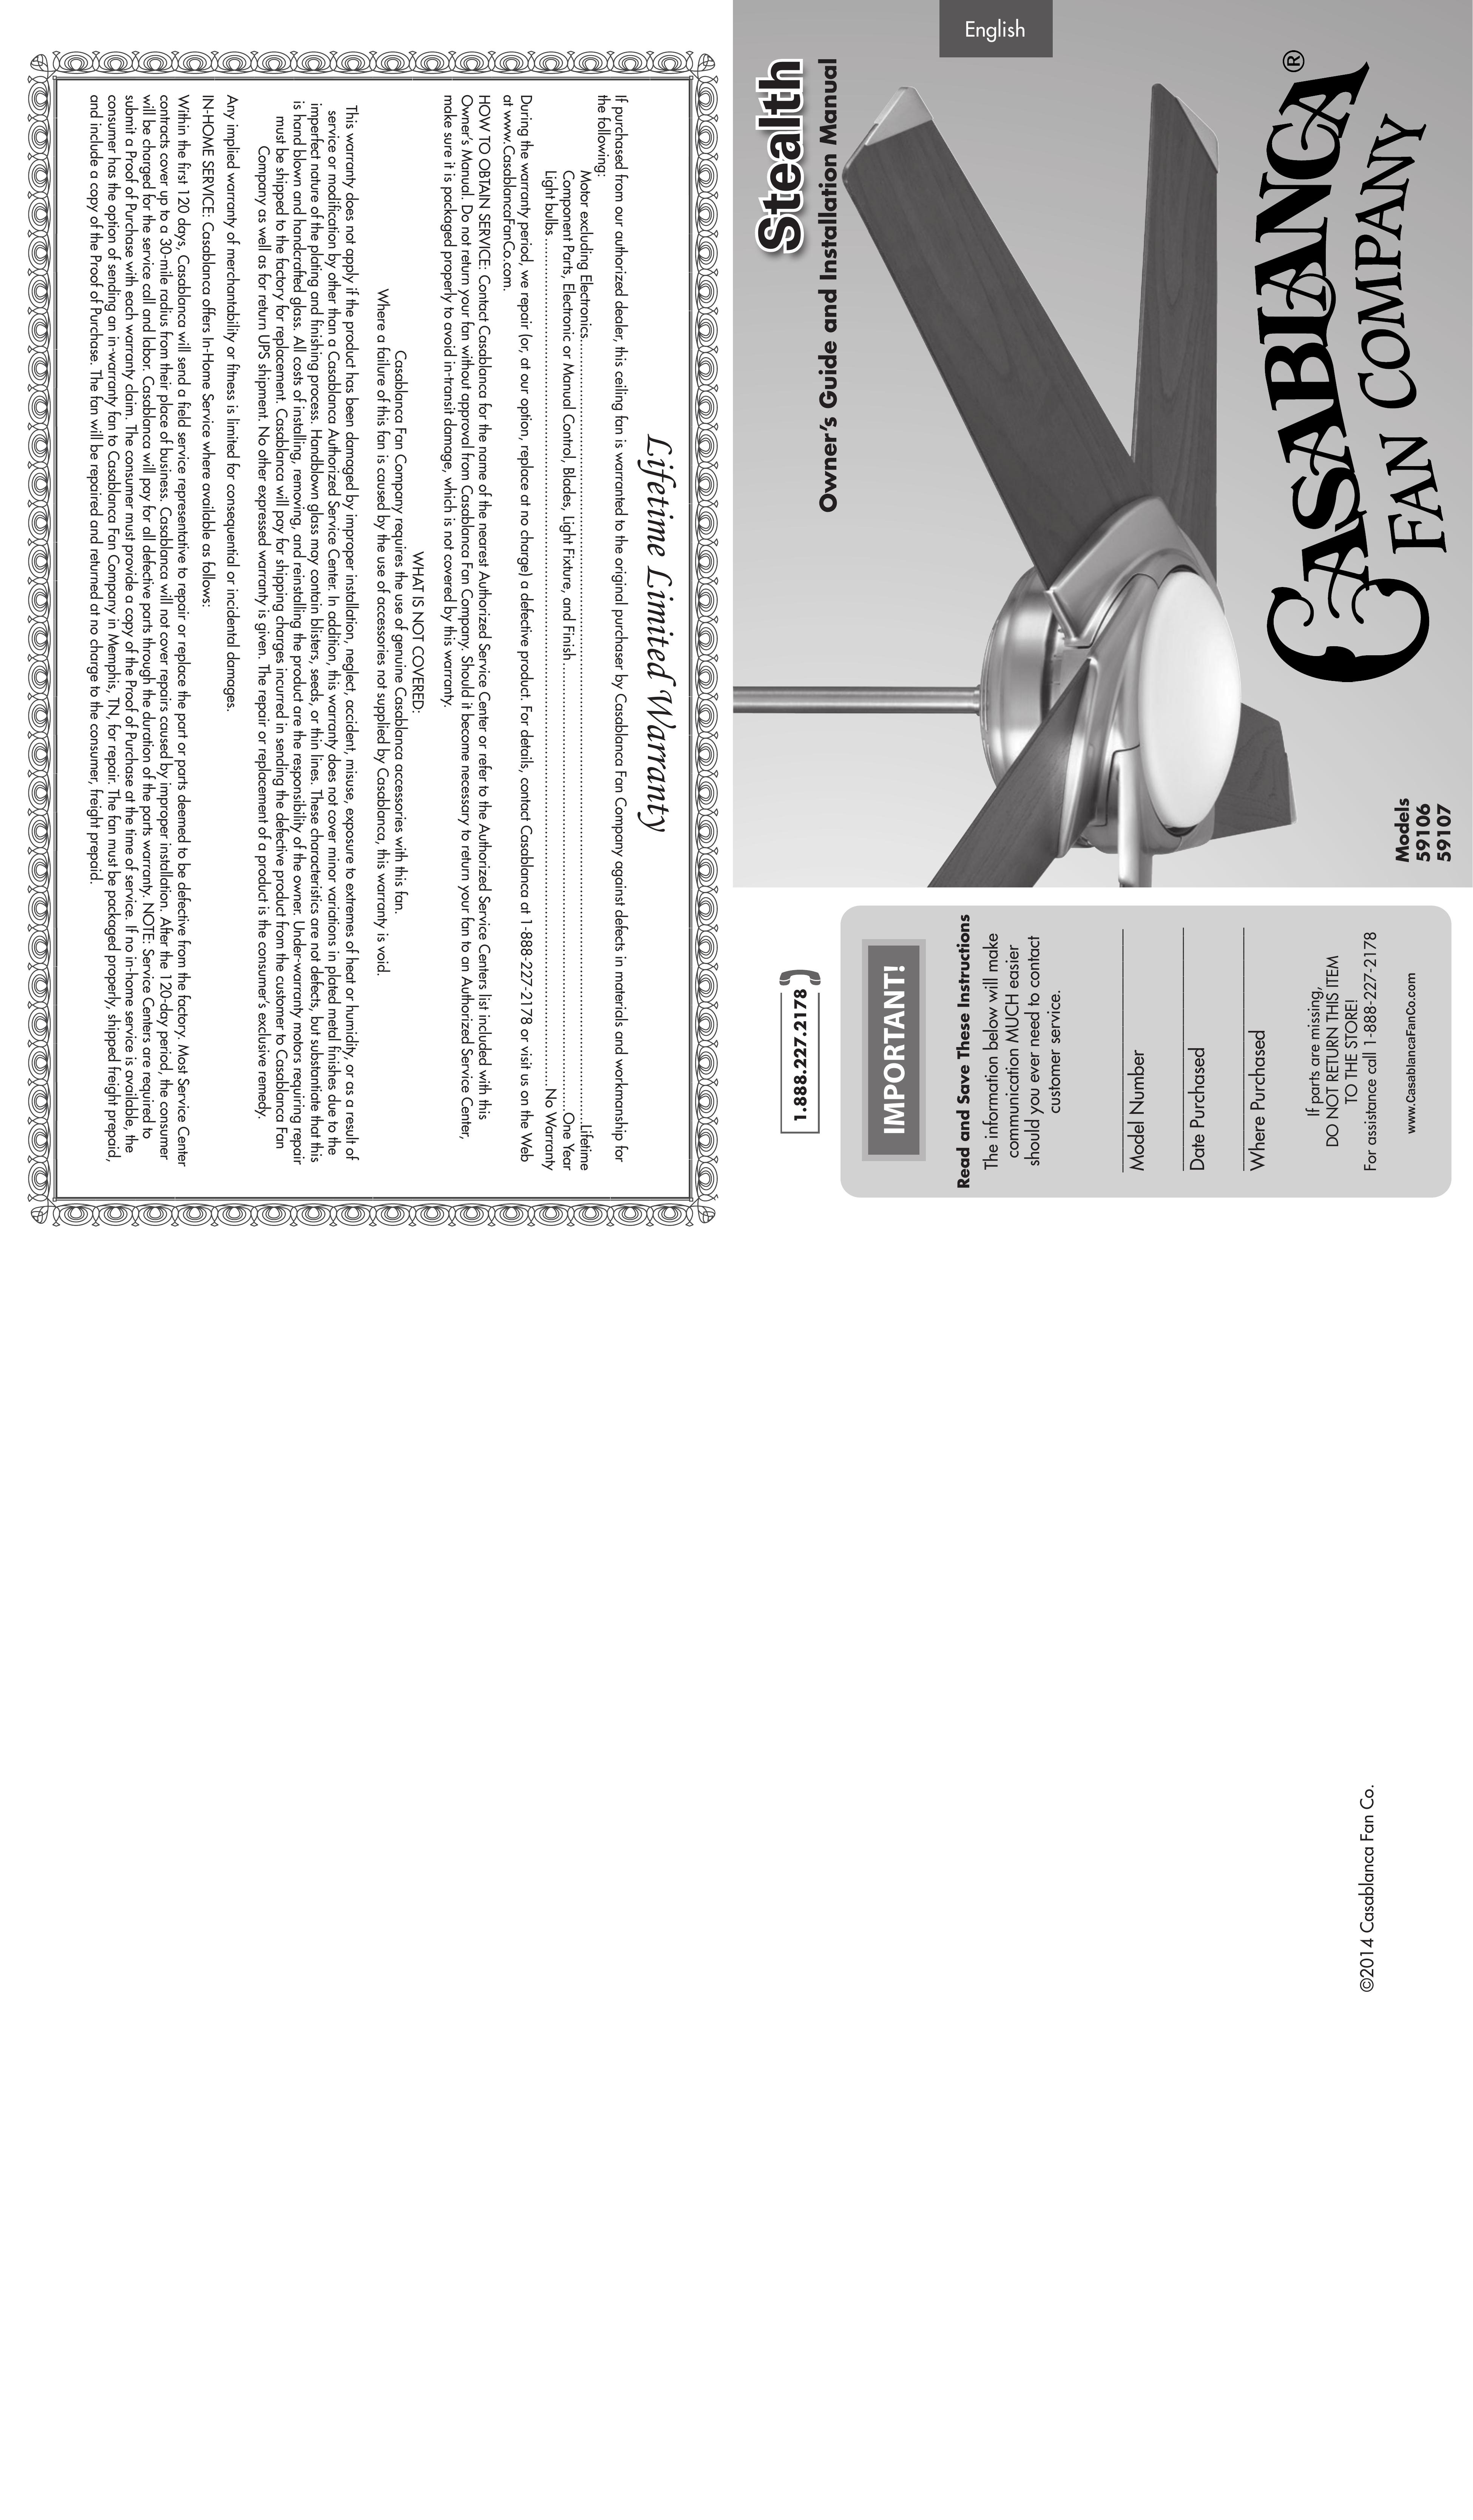 Casablanca Fan Company 59106 59107 Outdoor Ceiling Fan User Manual